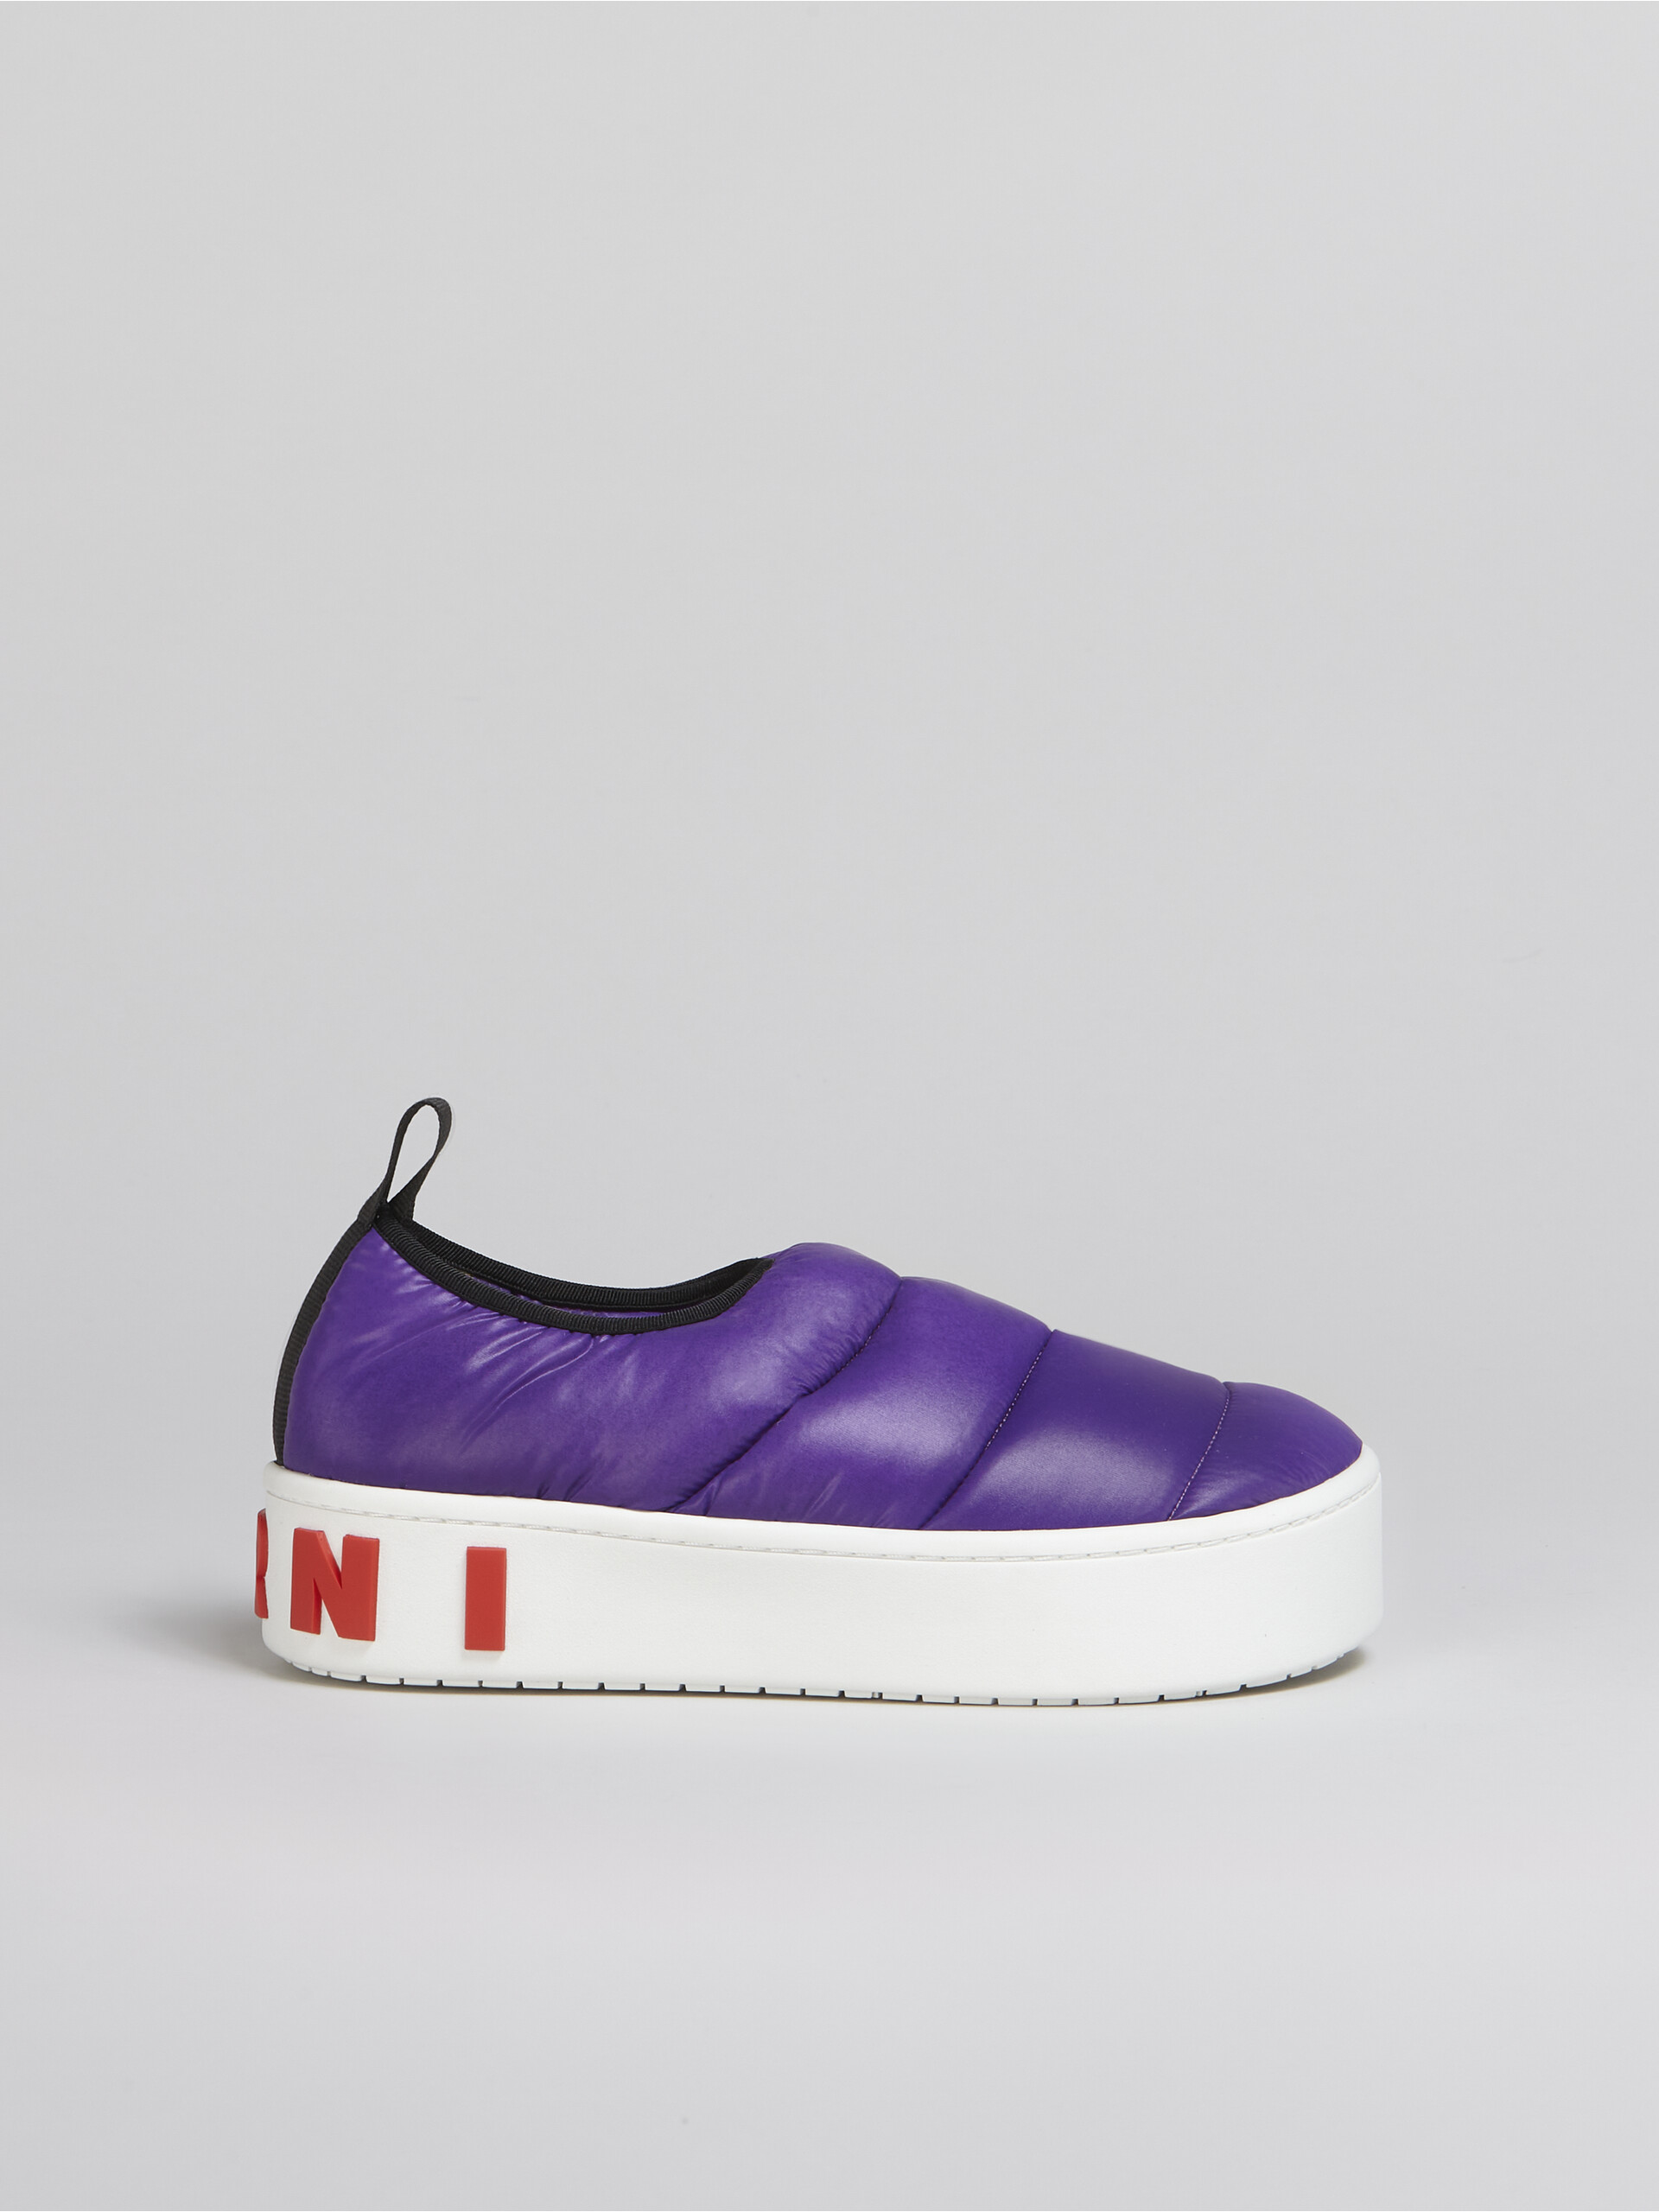 Sneaker PAW senza lacci in nylon trapuntato viola - Sneakers - Image 1